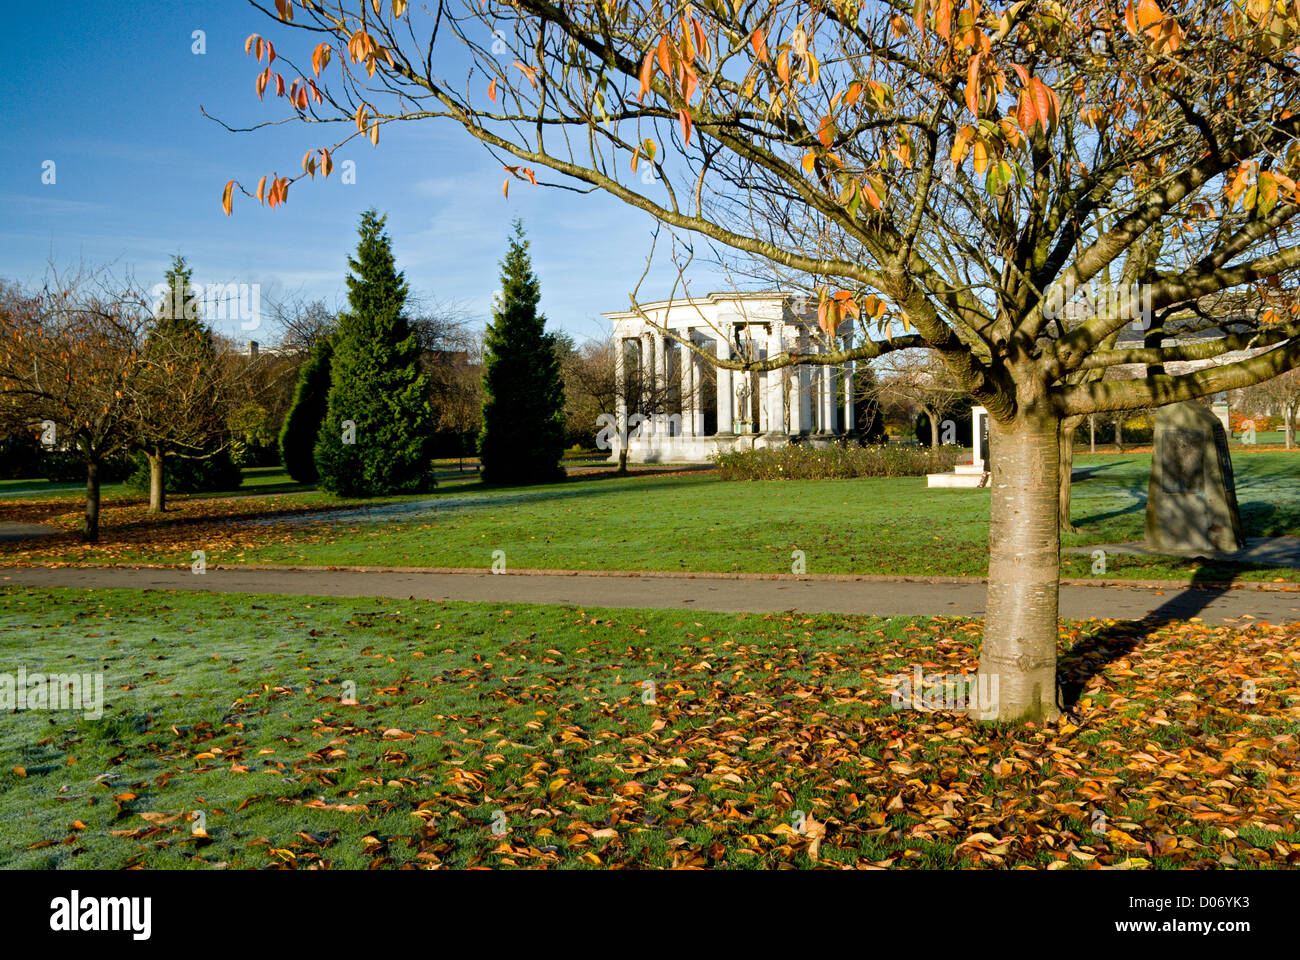 Couleurs d'automne et au Pays de Galles National War Memorial, Alexandra Gardens, Cathays Park, Cardiff, Pays de Galles, Royaume-Uni. Banque D'Images